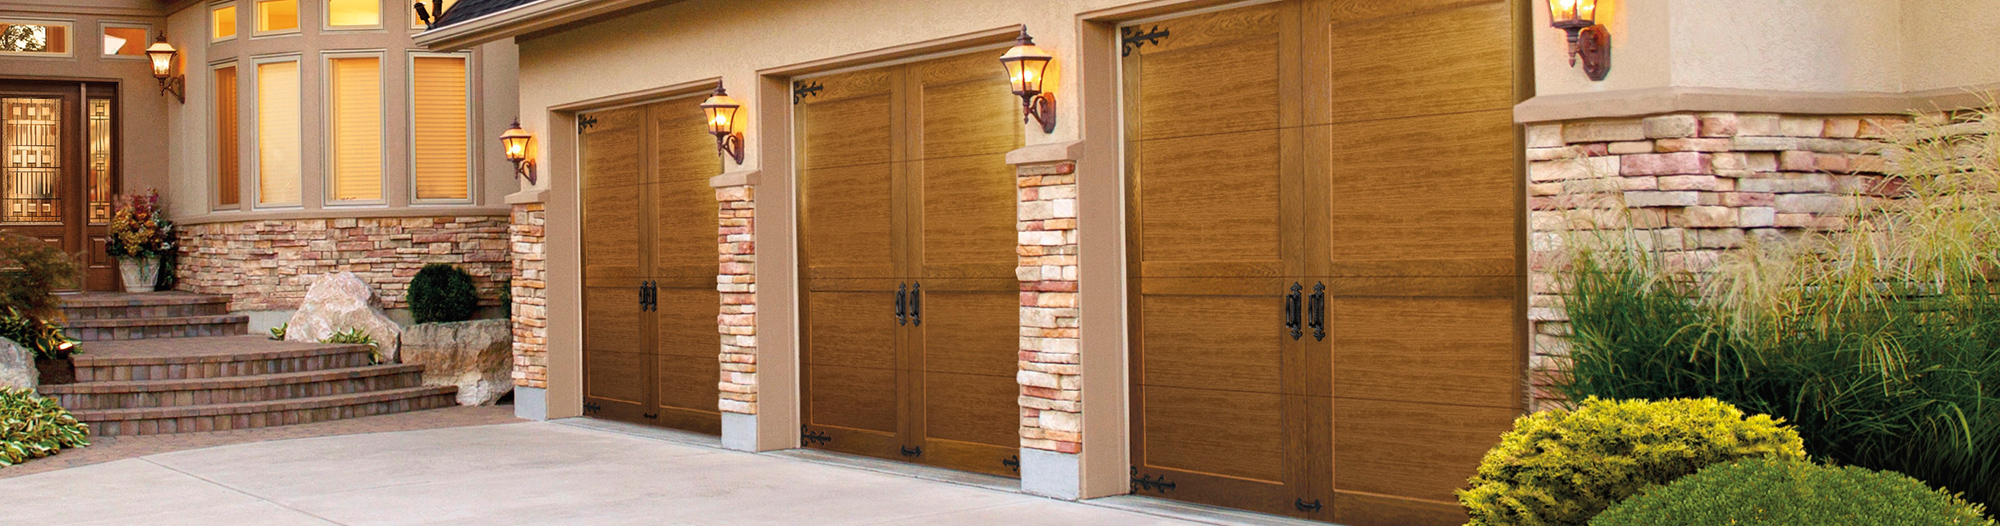 Best Garage Door Opener Repair Salem Oregon with Simple Design